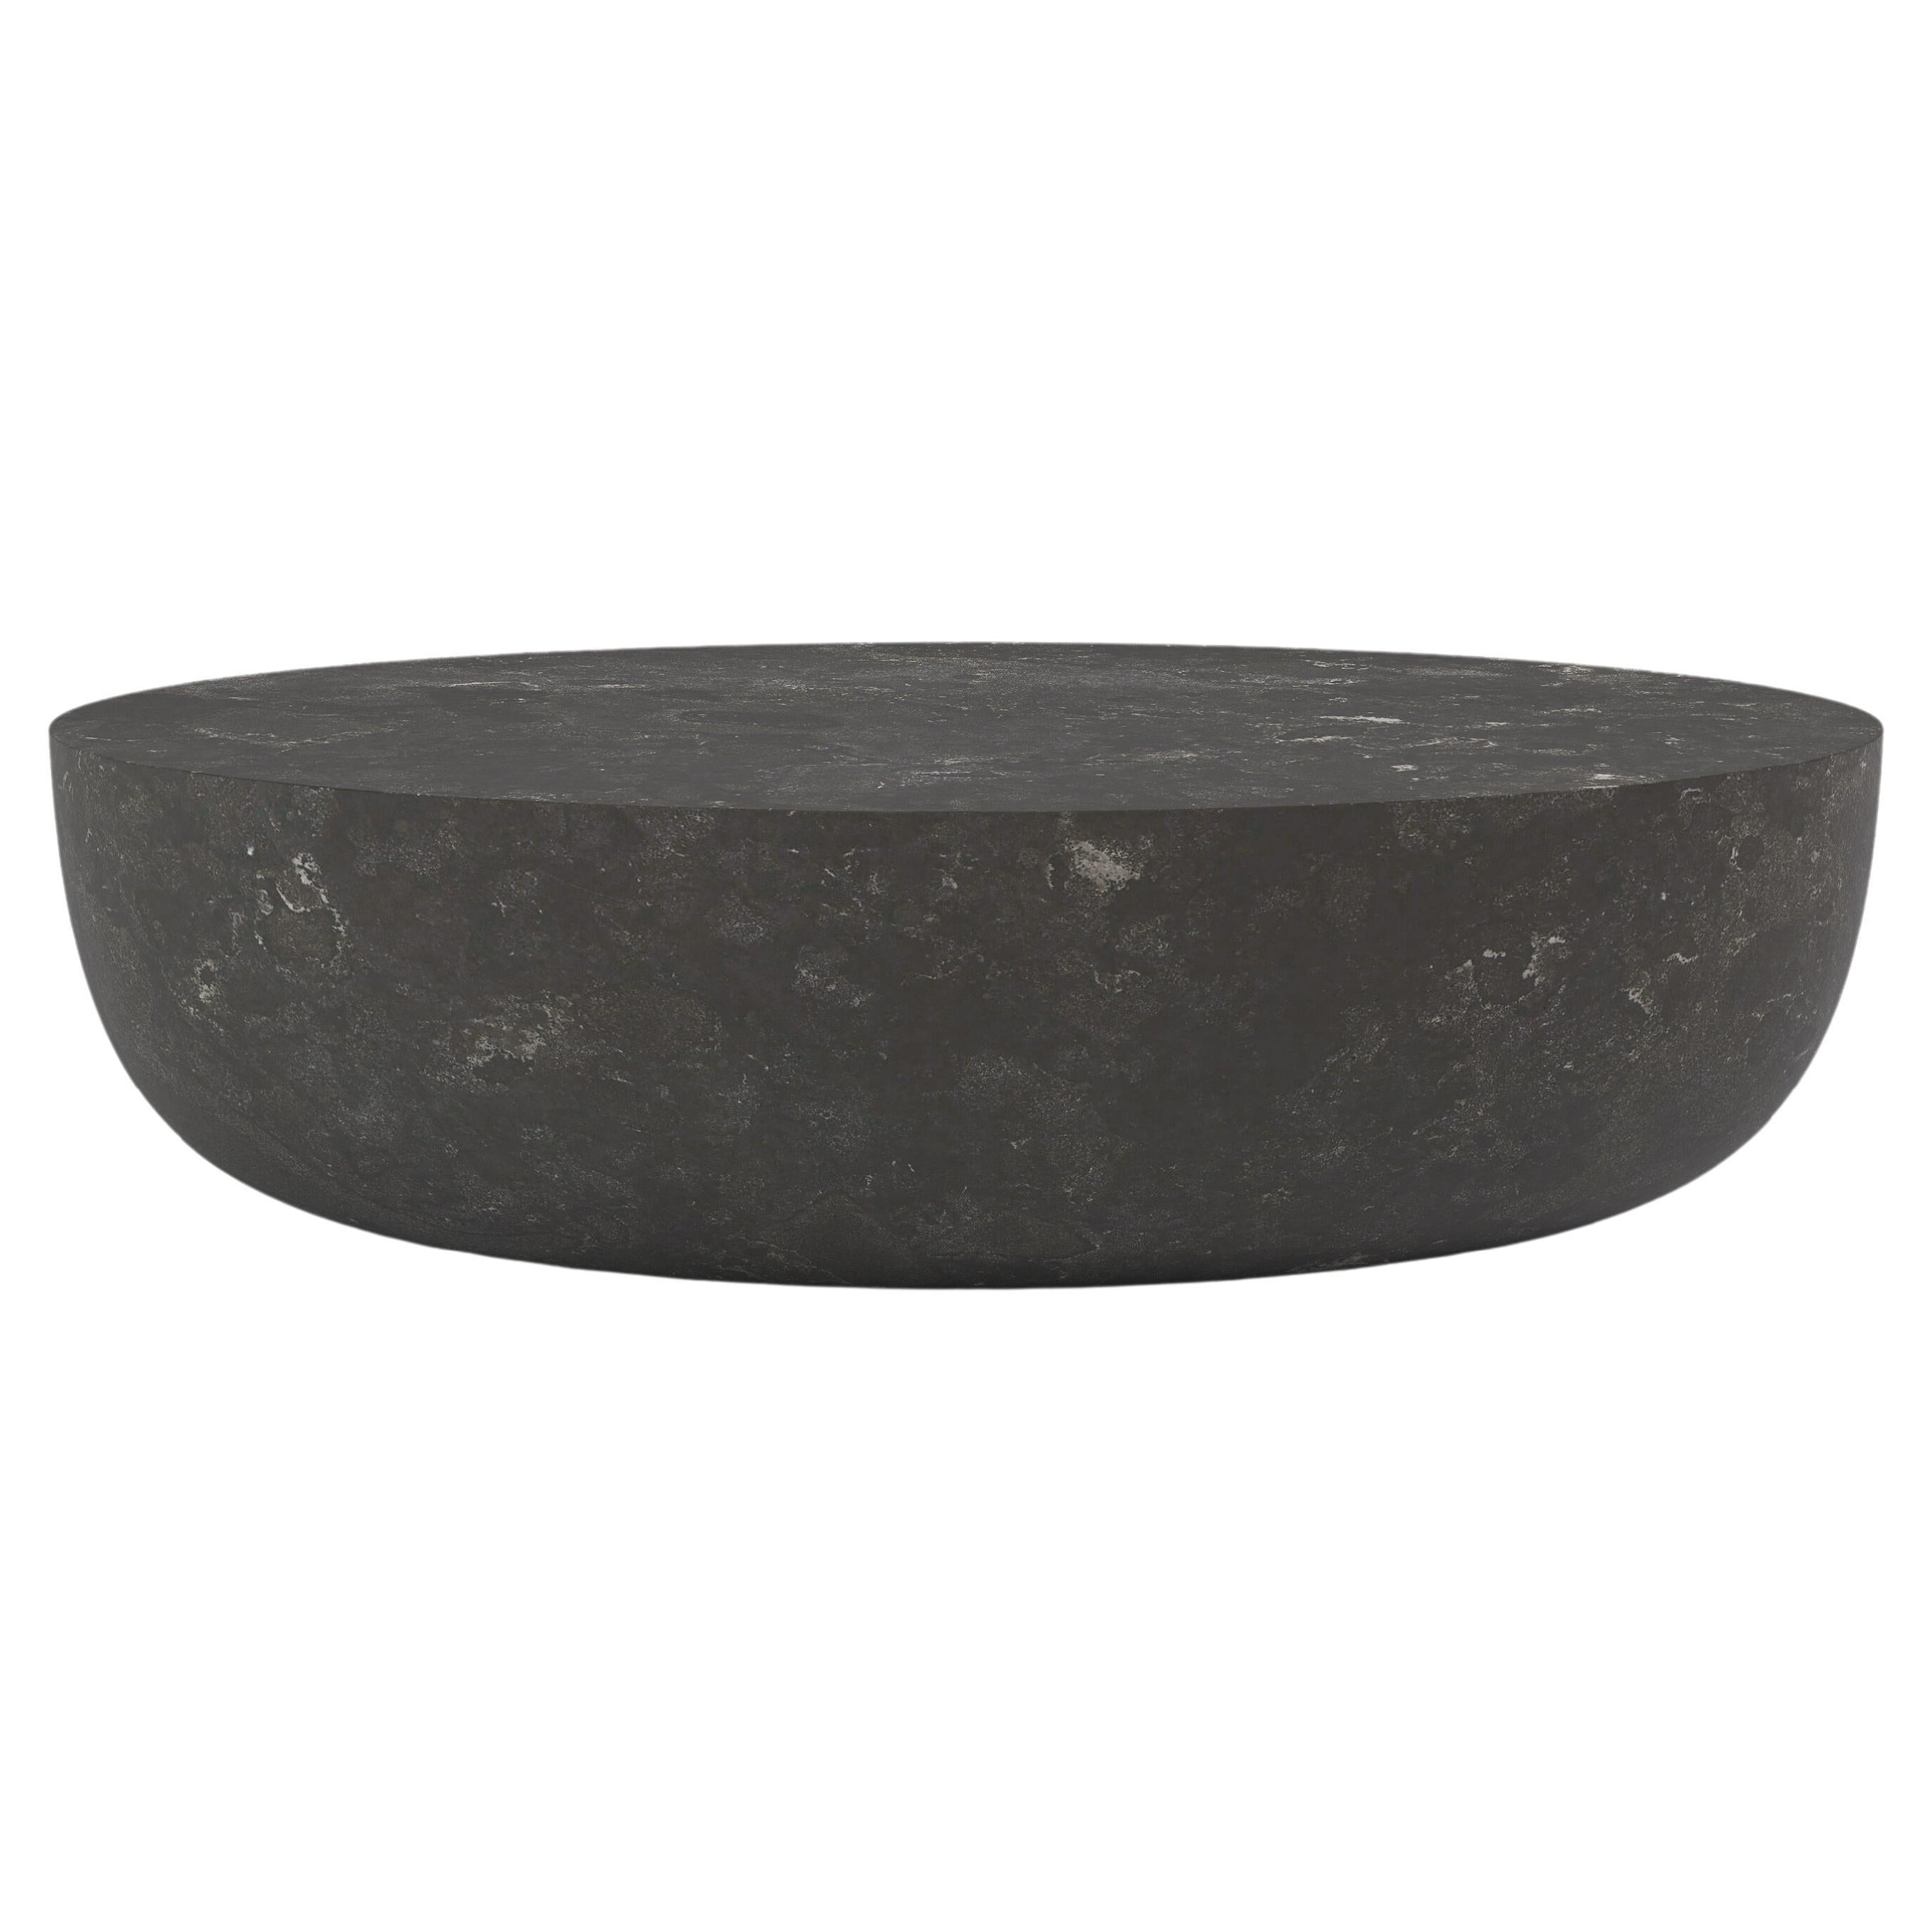 FORM(LA) Sfera Oval Coffee Table 60”L x 42”W x 16”H Nero Petite Granite